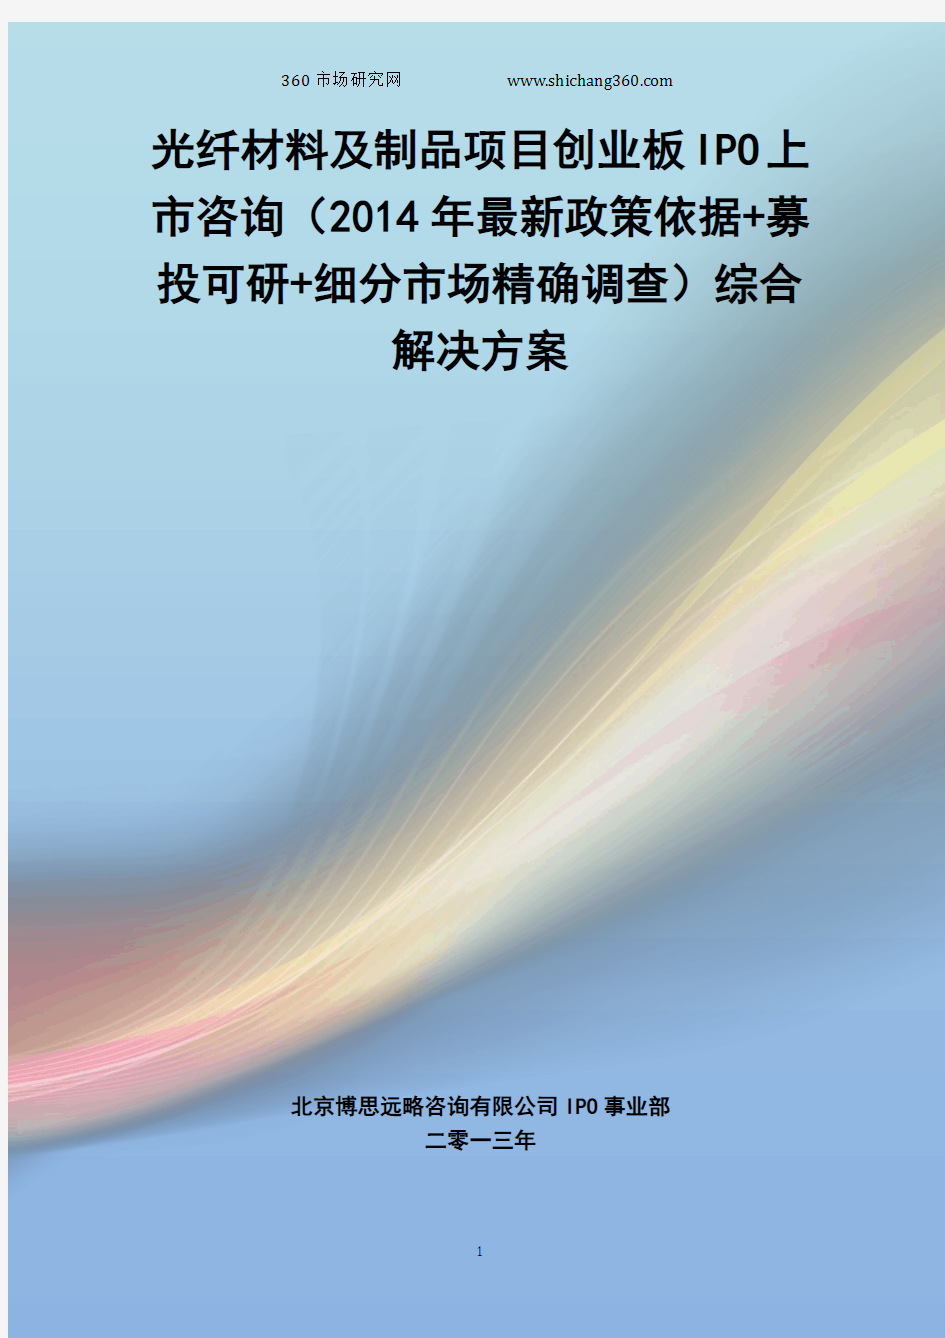 光纤材料及制品IPO上市咨询(2014年最新政策+募投可研+细分市场调查)综合解决方案